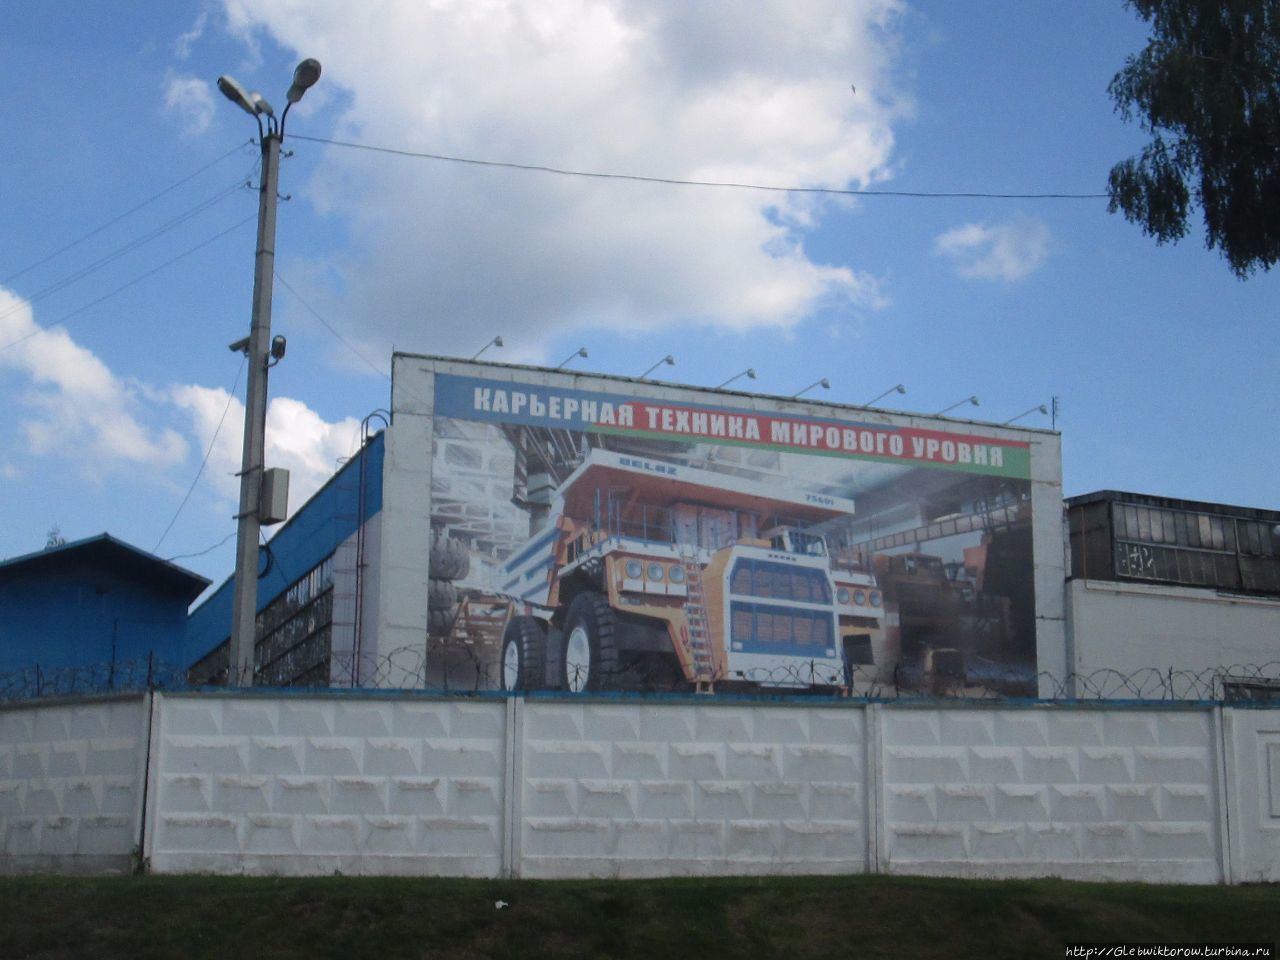 Индустриальная достопримечательность — завод БелАЗ Жодино, Беларусь